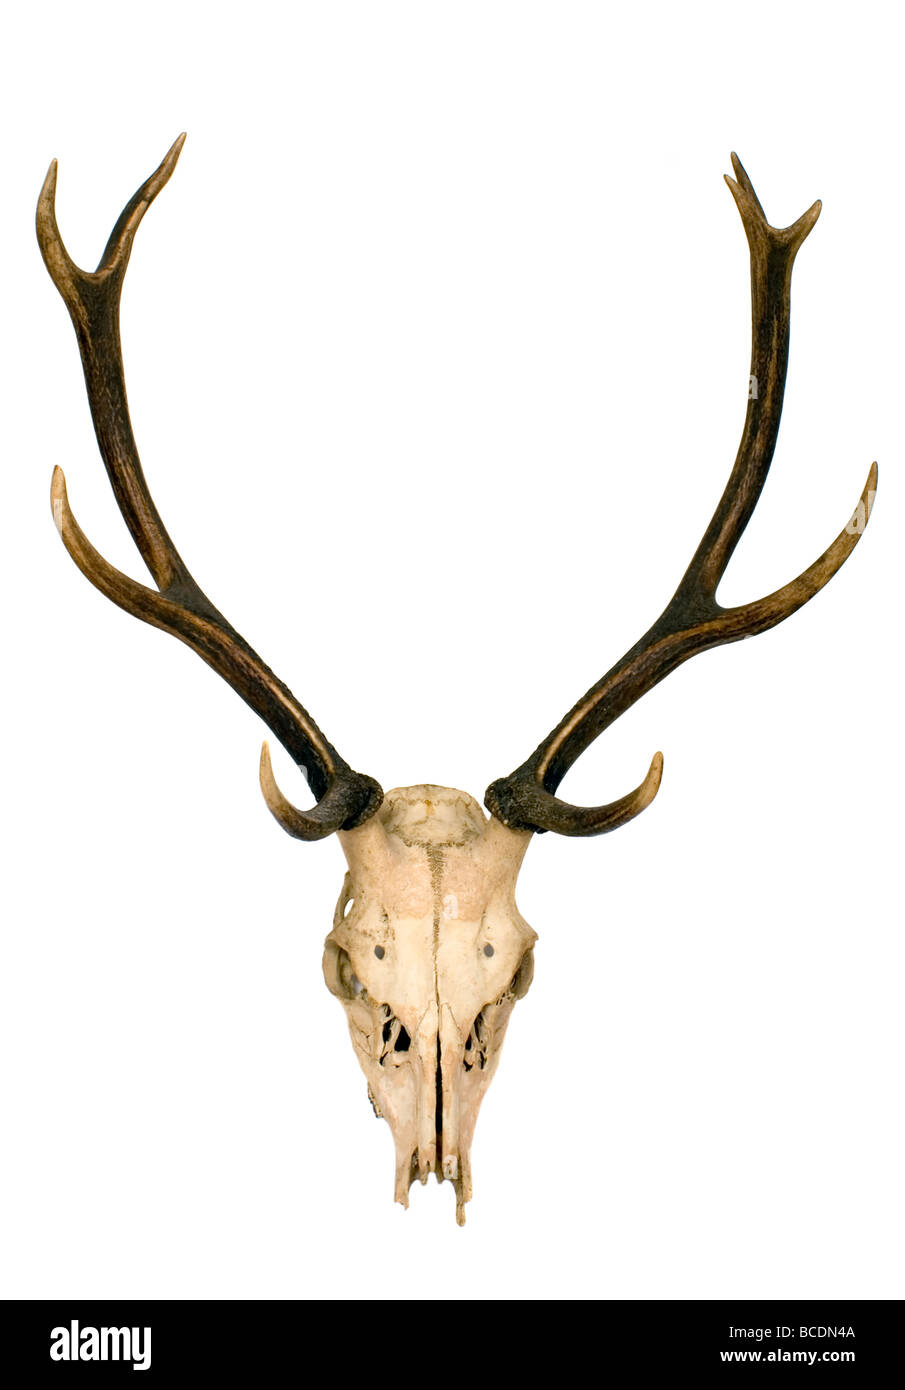 Horns of deer Stock Photo